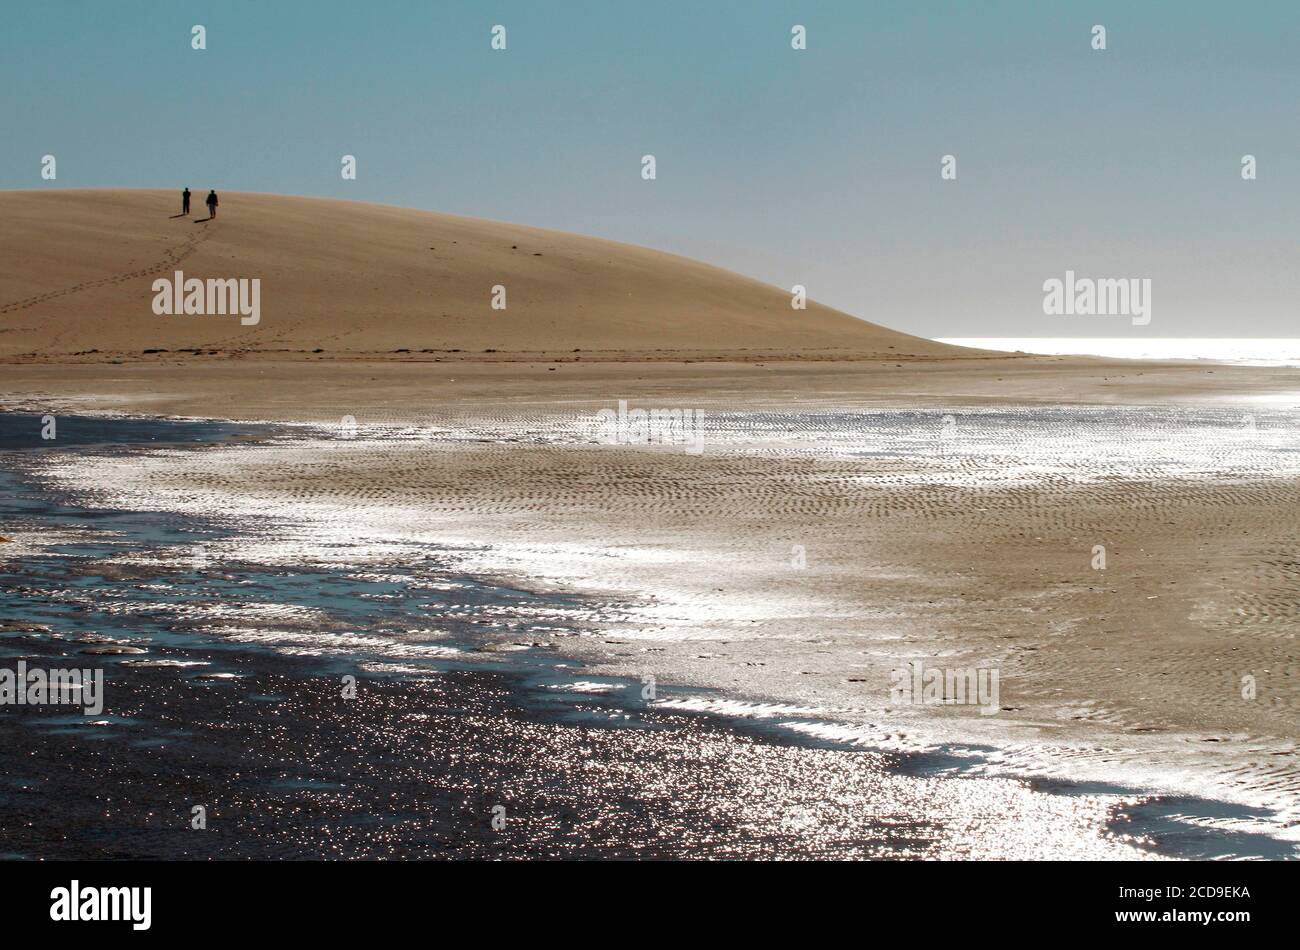 Marocco, Sahara occidentale, Dakhla, sito della duna bianca che si erge tra la laguna e le montagne Foto Stock